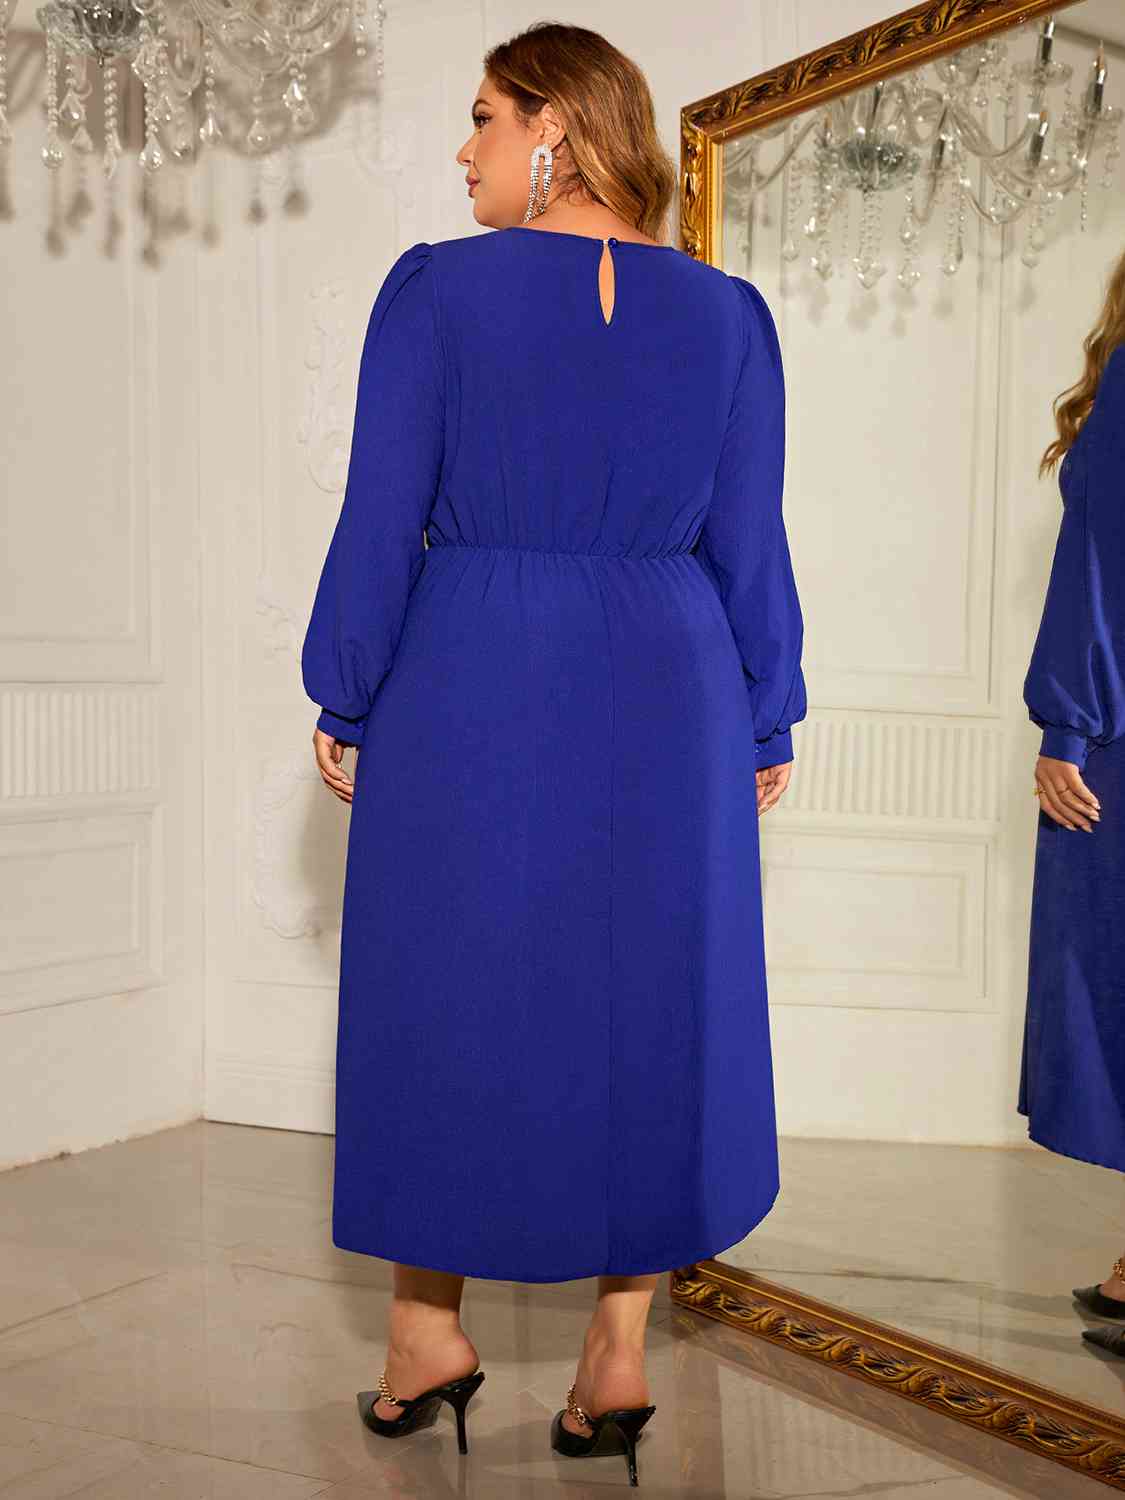 Elegant Plus Size Long Sleeve Dress with Round Neck